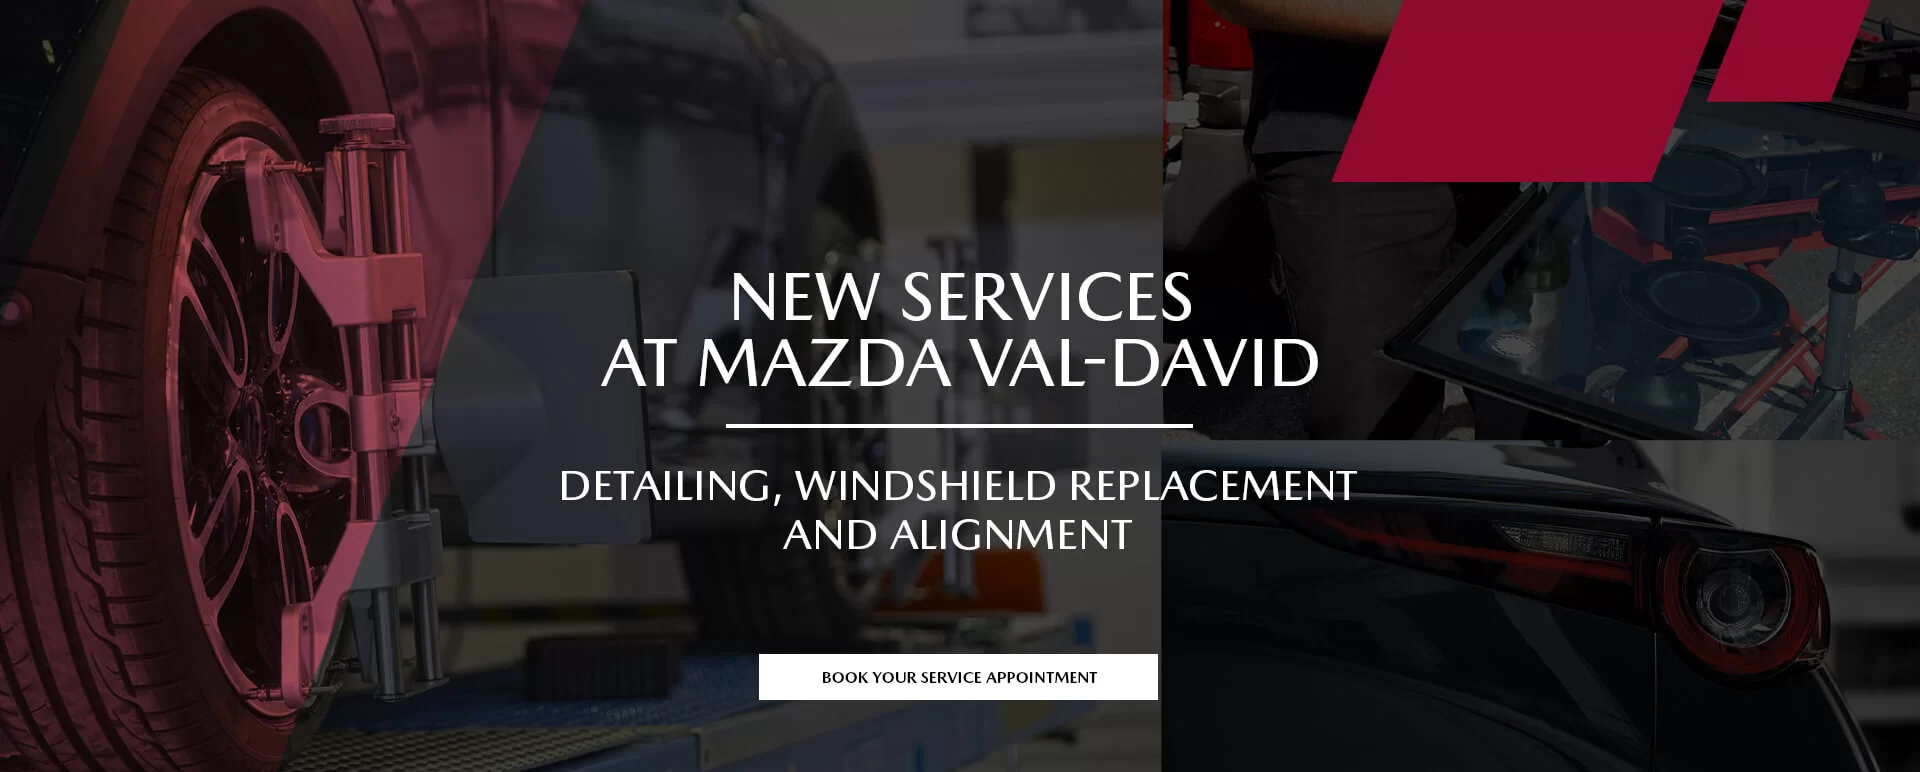 Mazda Val-David